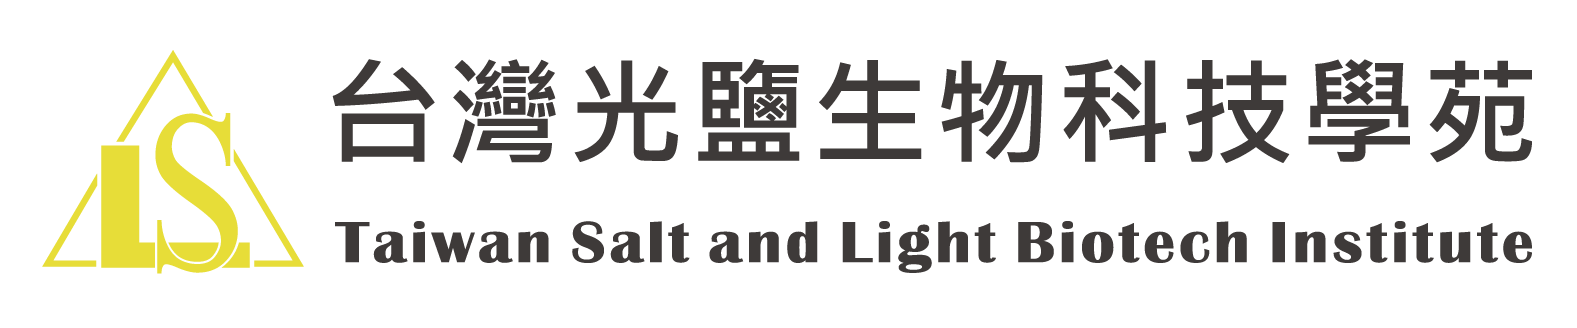 台灣光鹽生物科技學苑logo